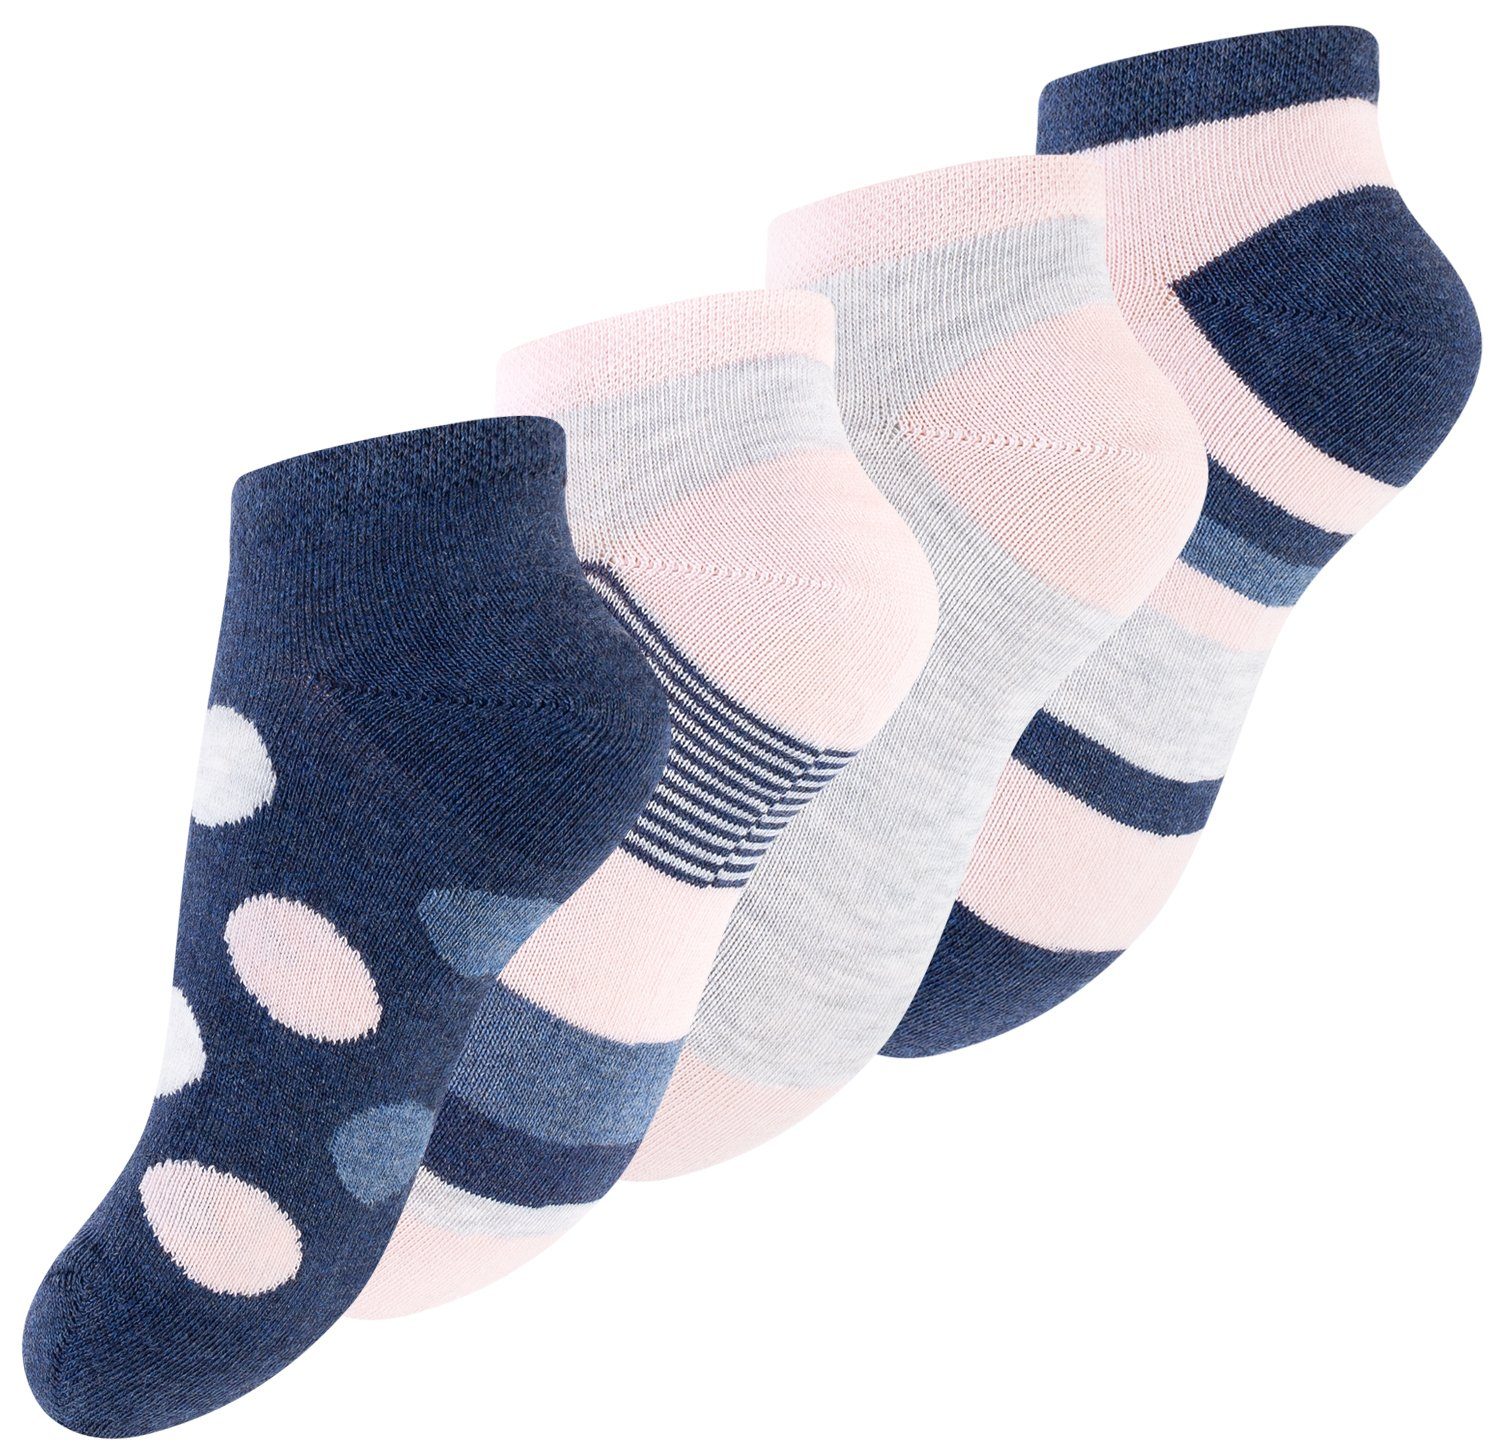 Cotton Prime® Носки для кроссовок DOTS & STRIPES (8-Paar) bunt gemustert mit Streifen und Punkte